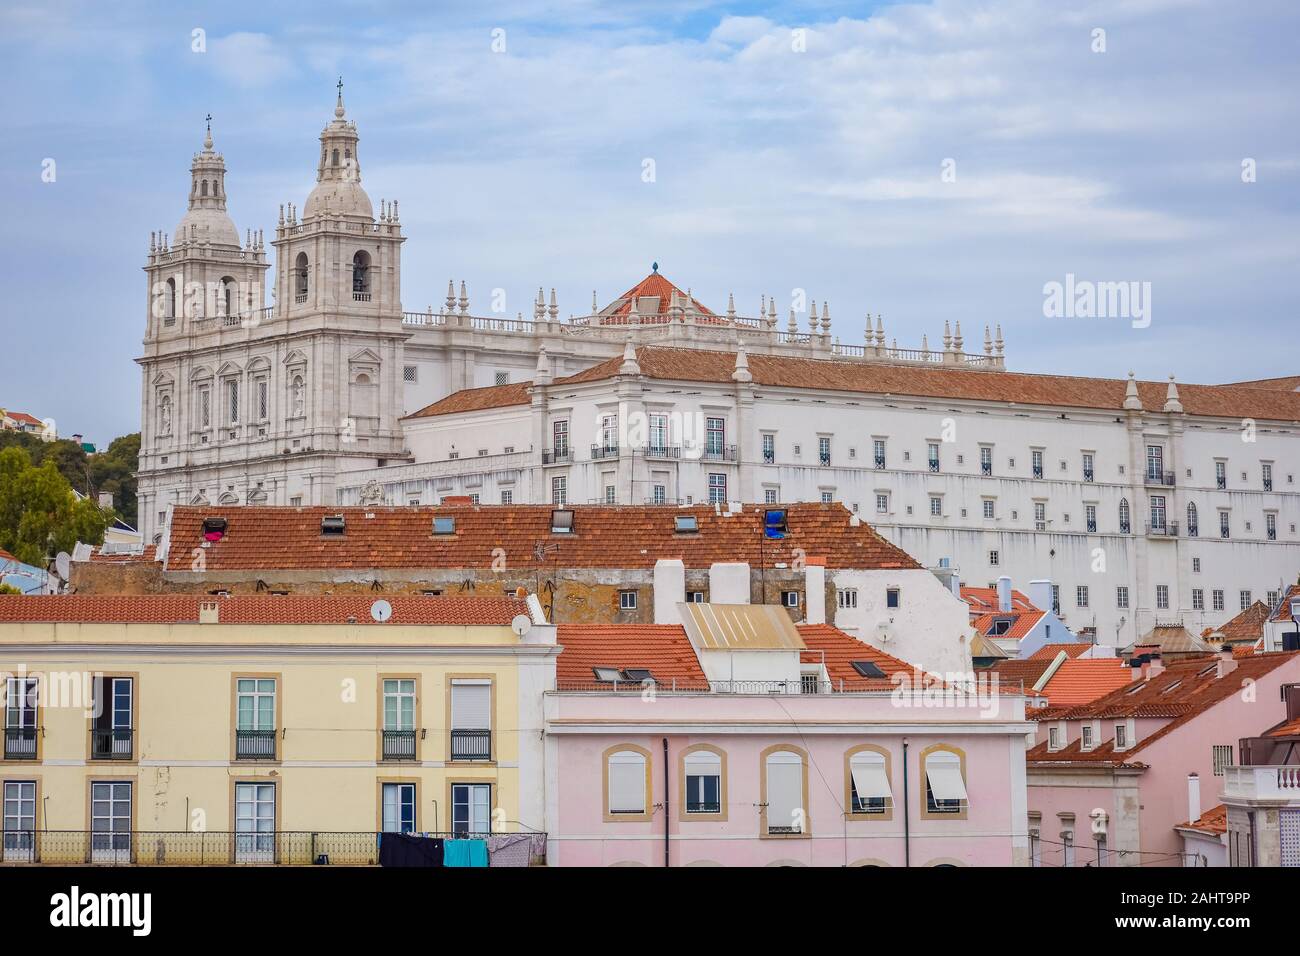 Le pareti colorate degli edifici di Lisbona, con tetti di colore arancione e la chiesa di Sao Vicente di consessi in background. Giornata di sole e cielo blu in estate Foto Stock